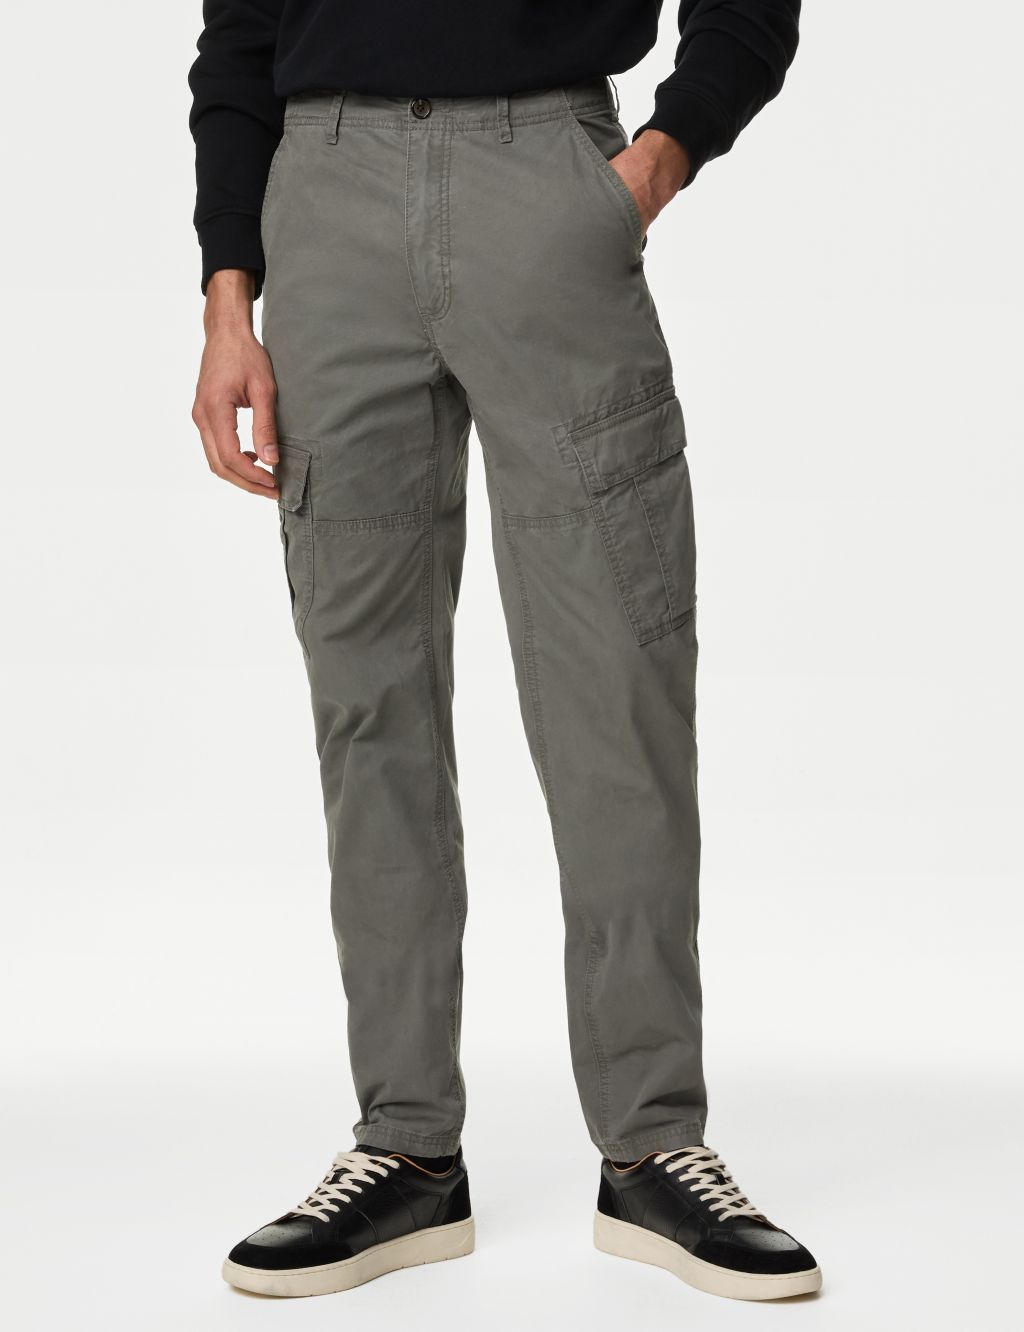 Buy Men's Slim Cargo Trousers Online